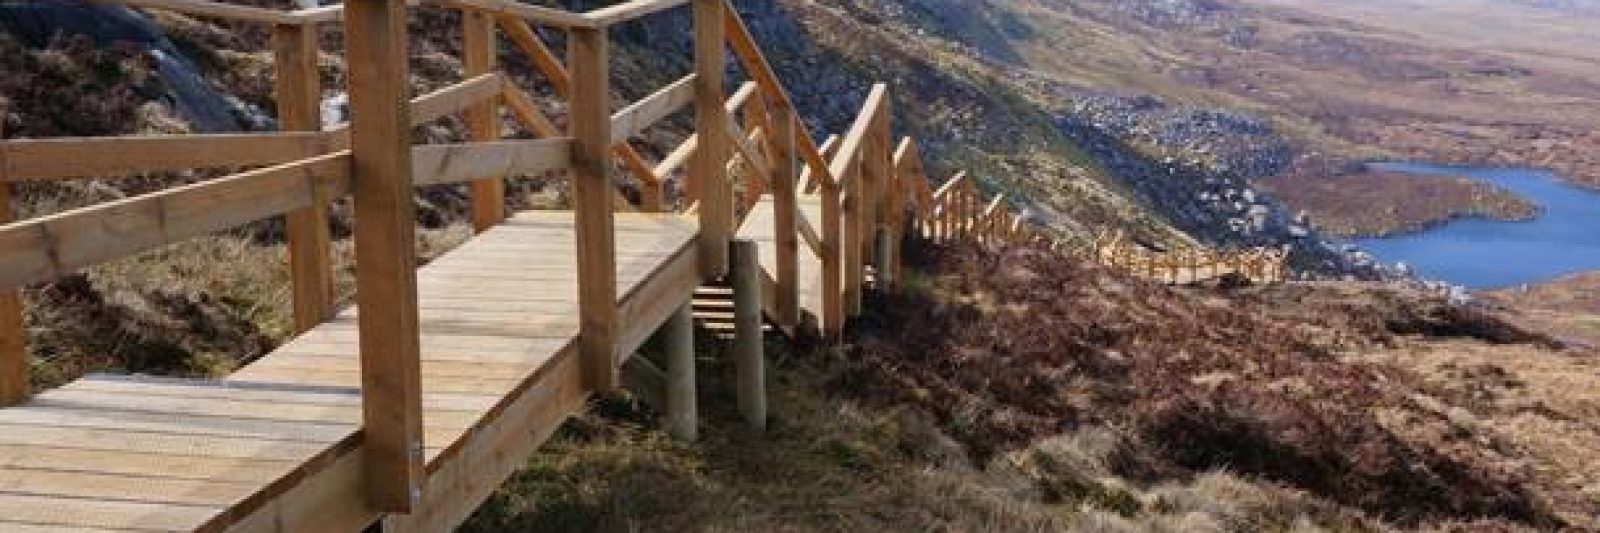 Cuilcagh Mountain Trail